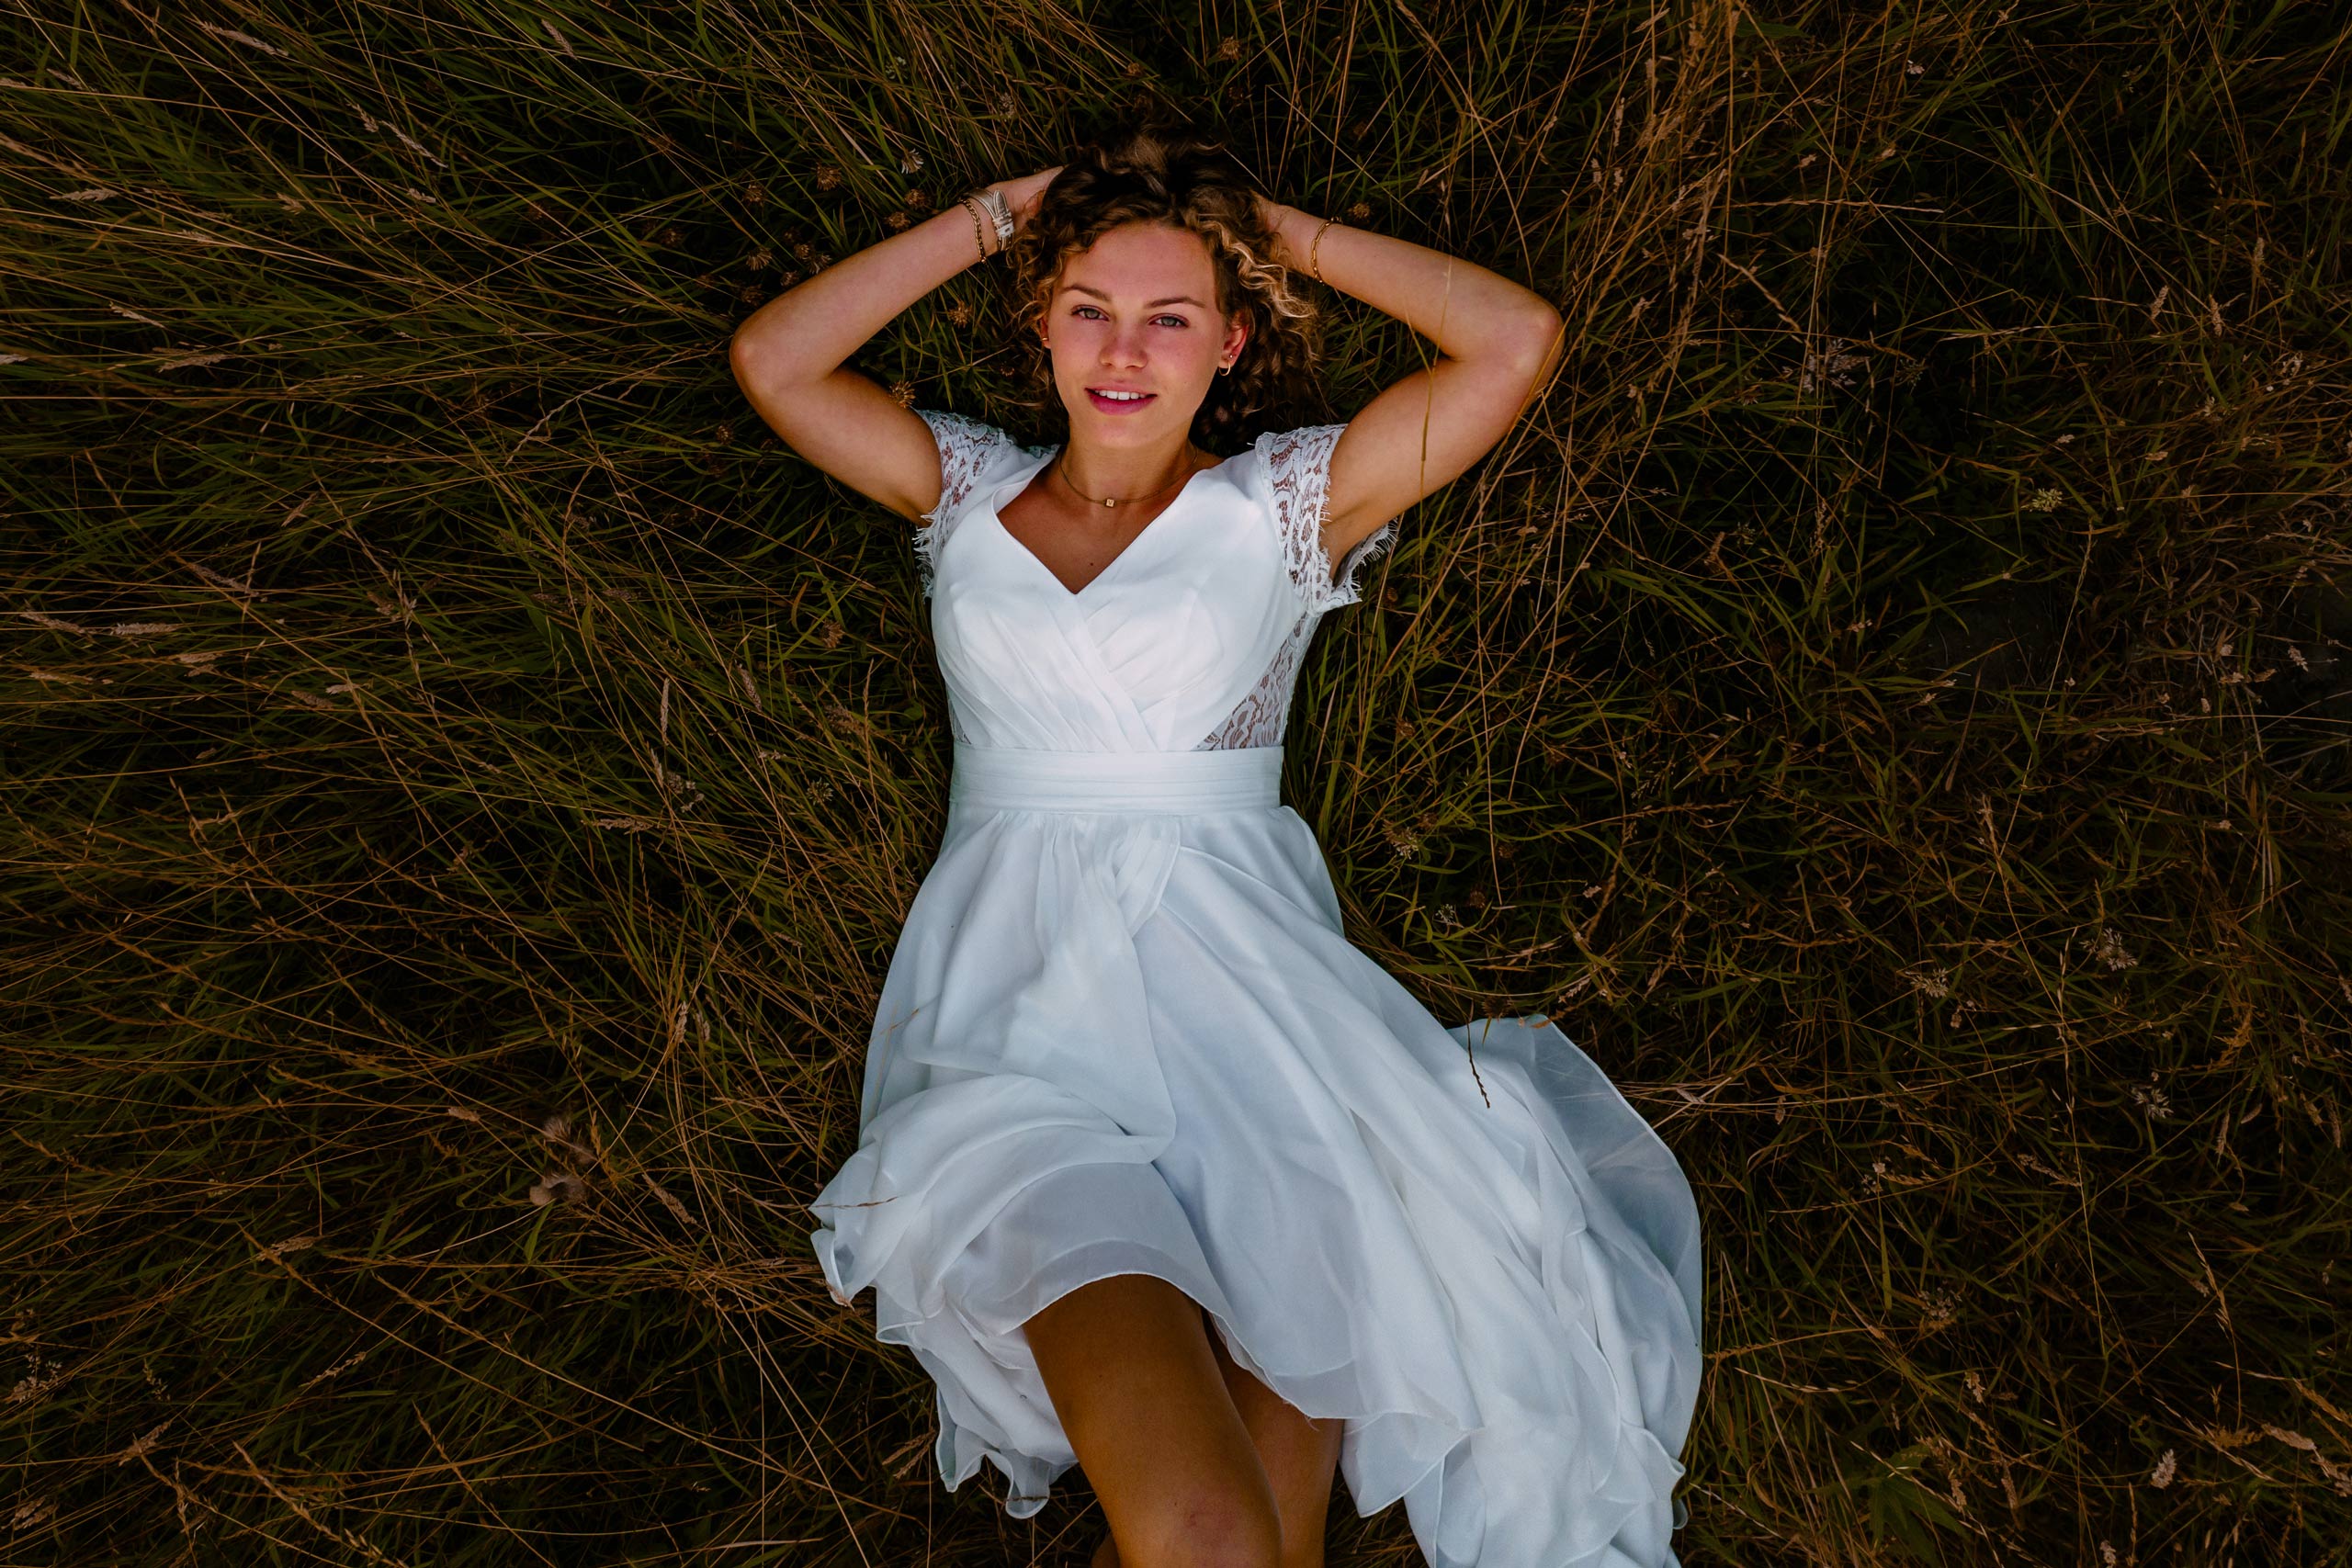 Een vrouw in een witte jurk die vredig ontspant in het gras.